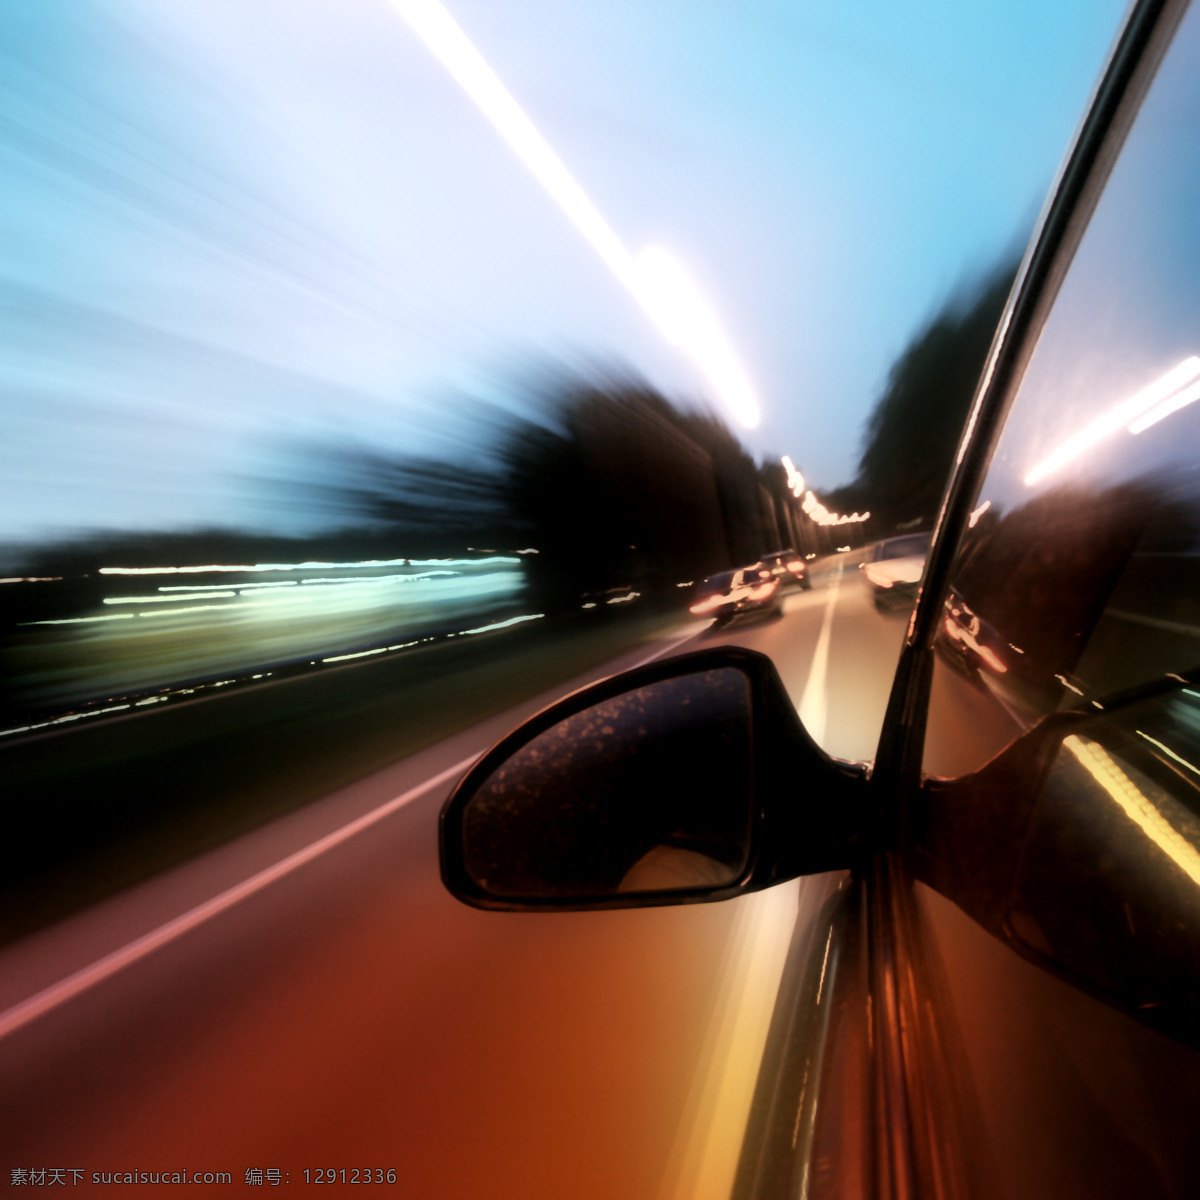 高速 行驶 汽车 高速行驶 反光镜 道路 公路图片 环境家居